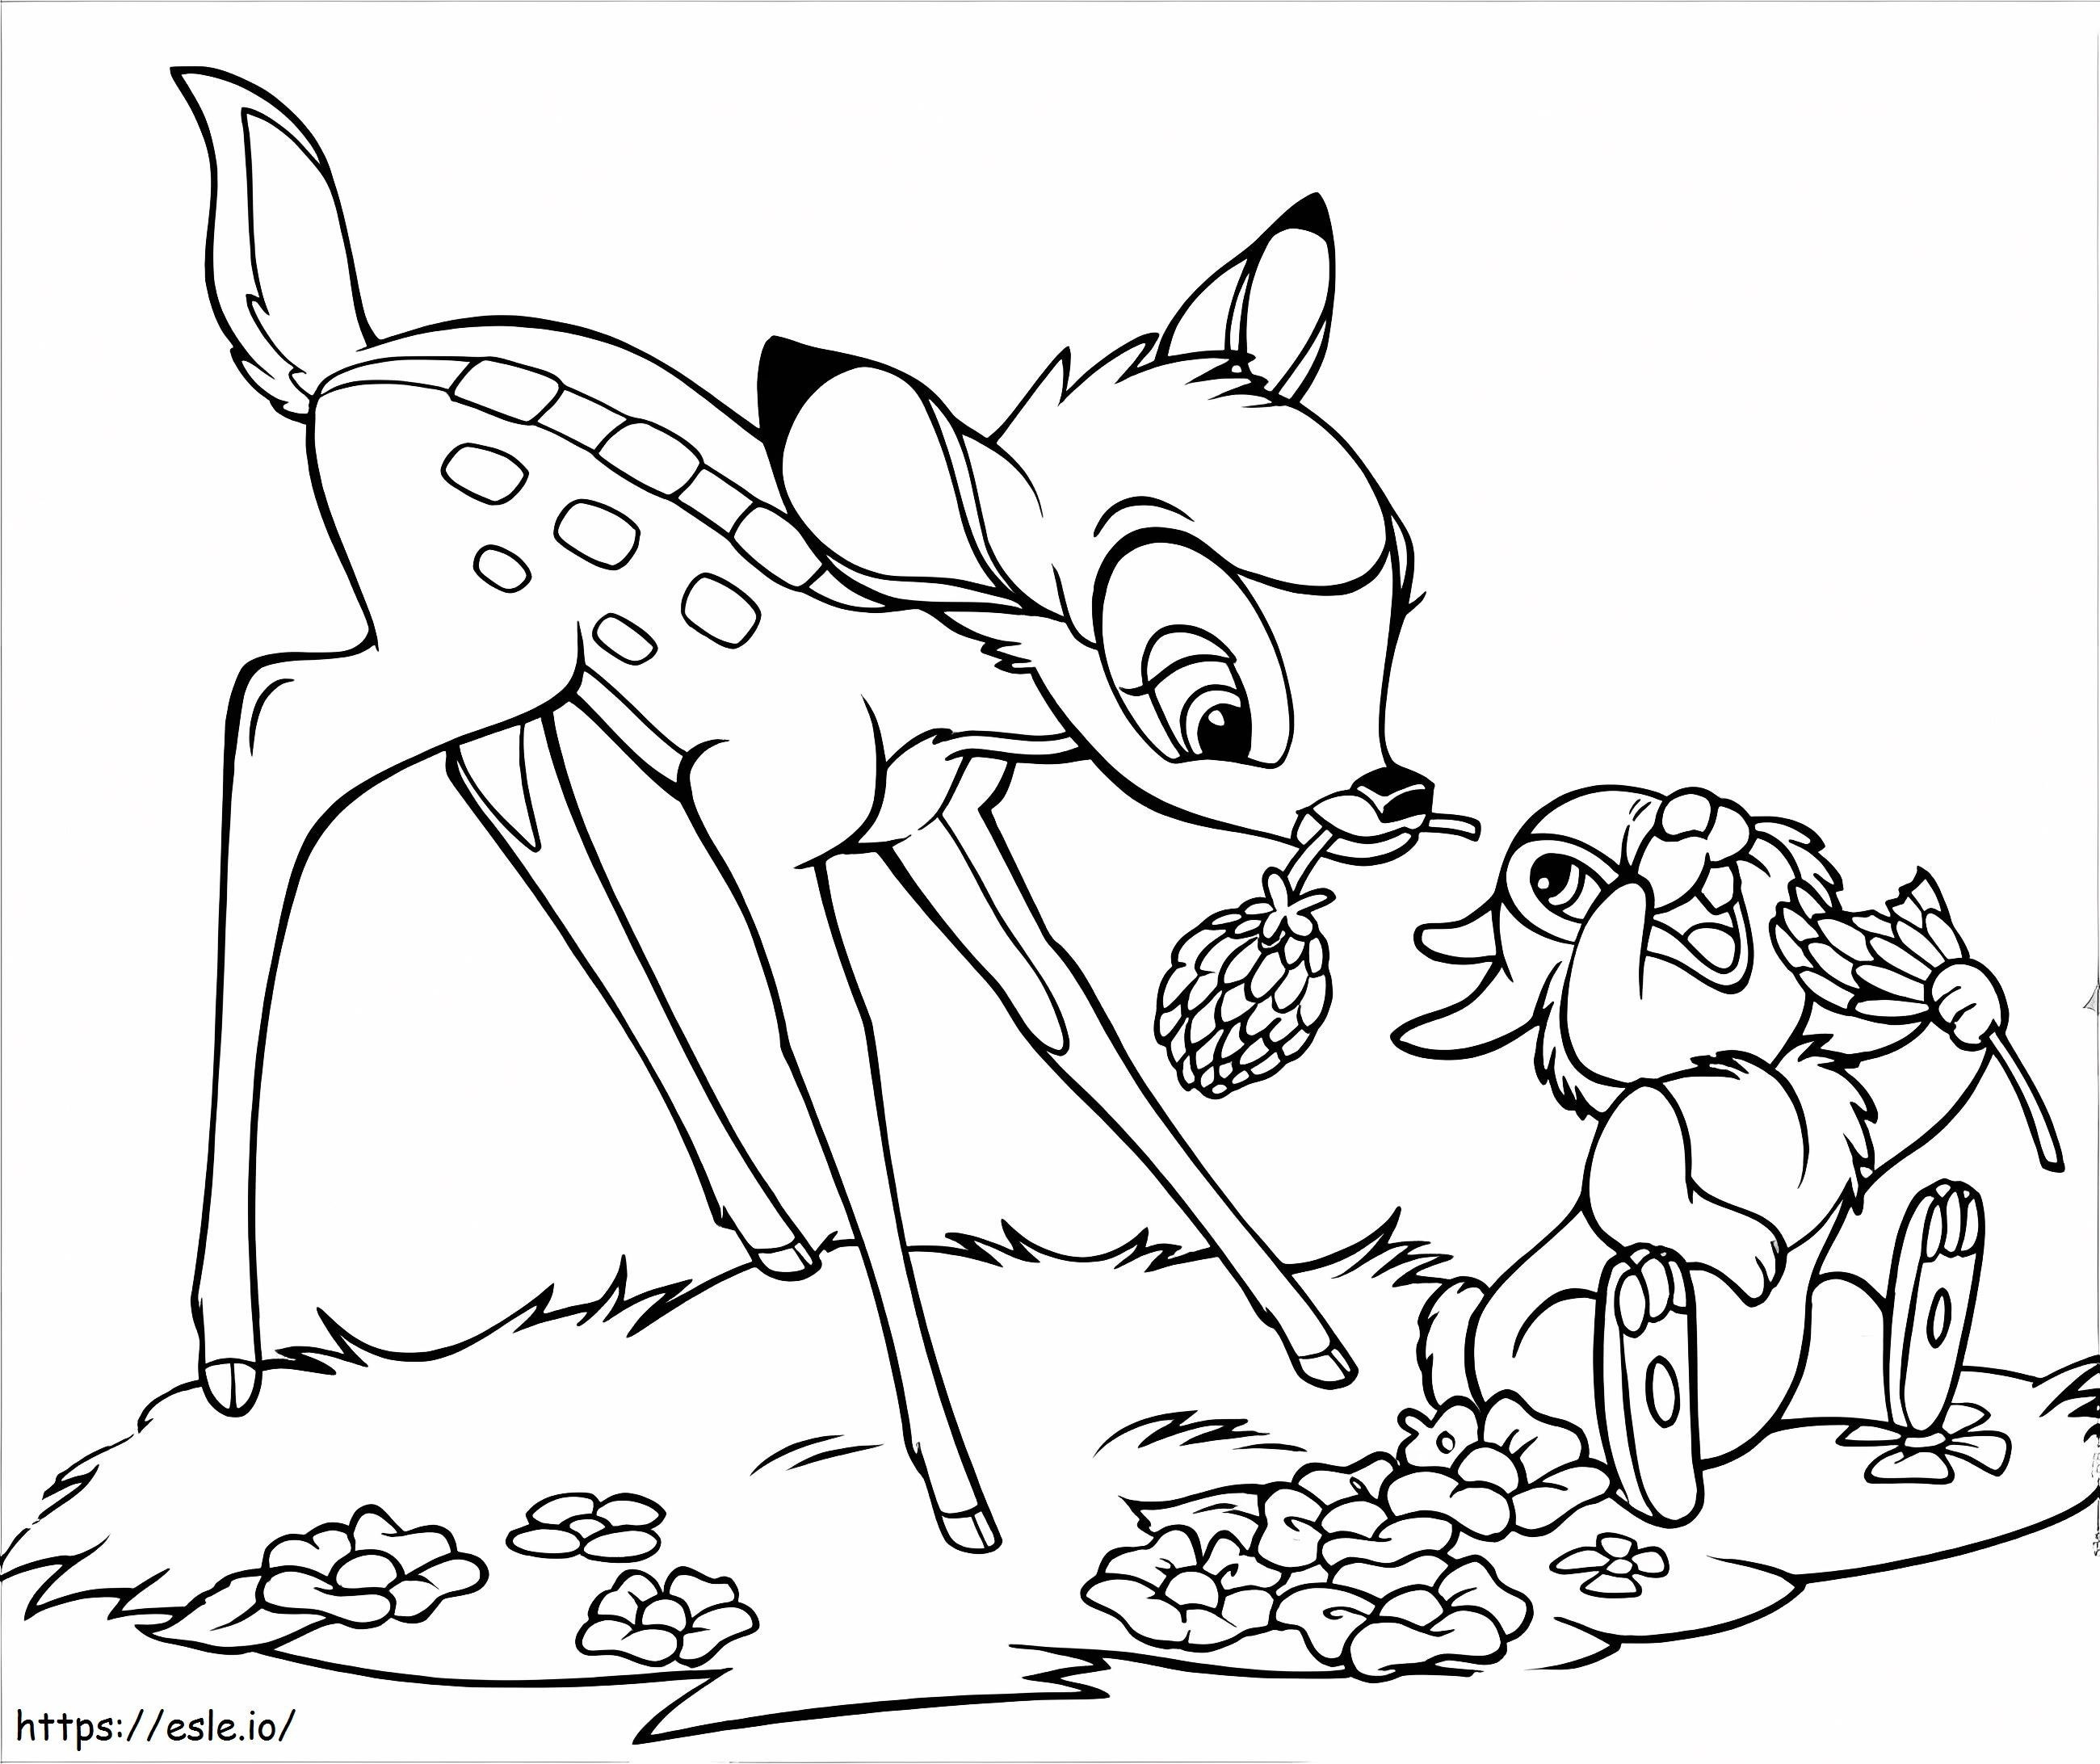 Bambi i Thumper jedzą kolorowanka